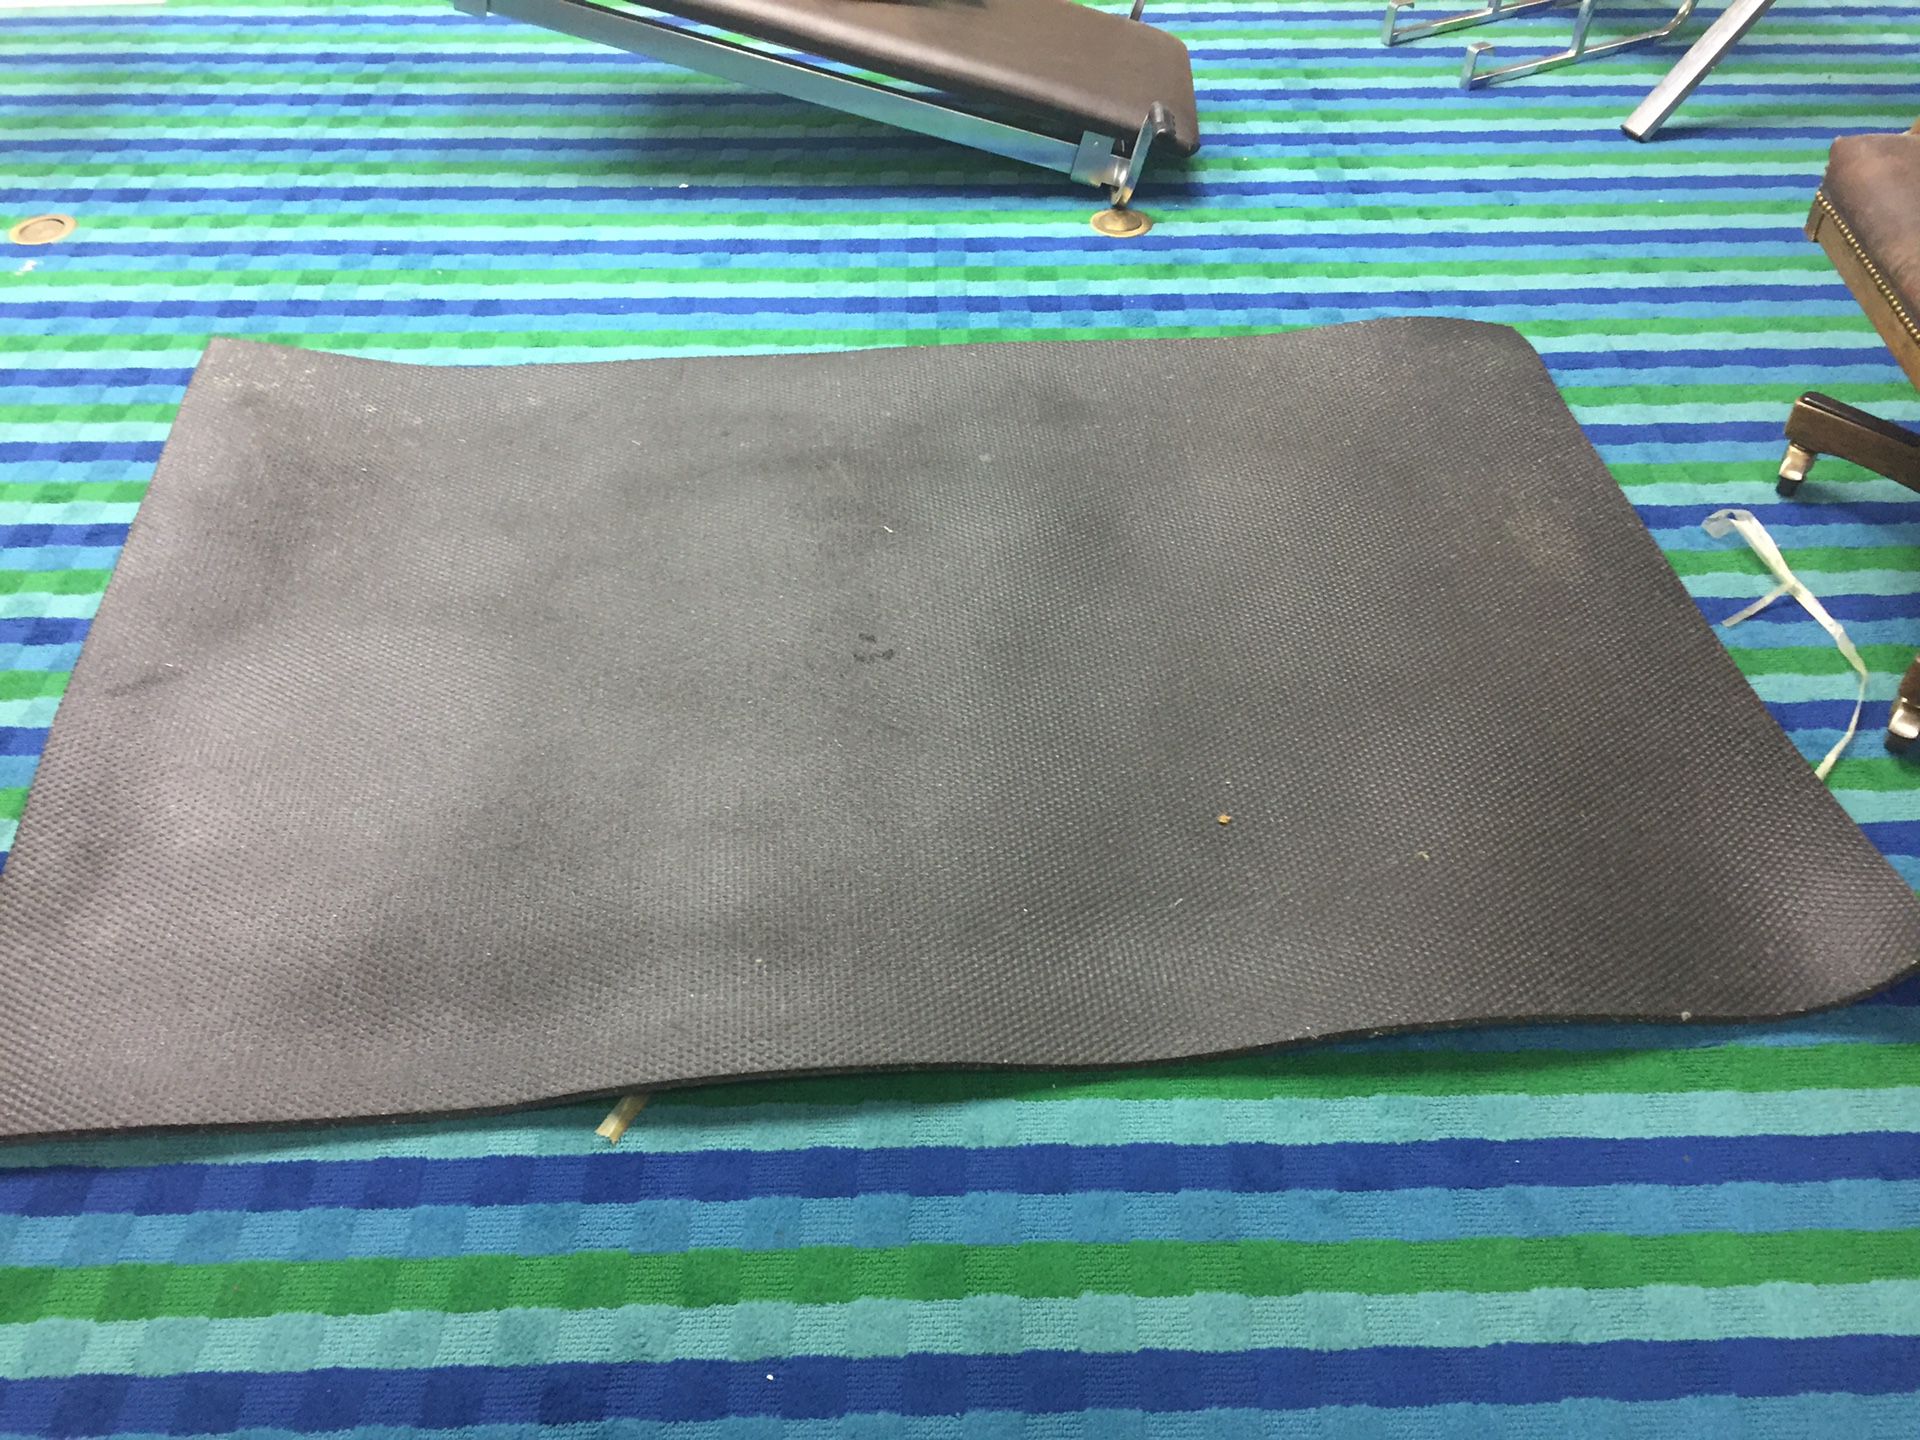 Mat (heavy rubber) for exercise equipment